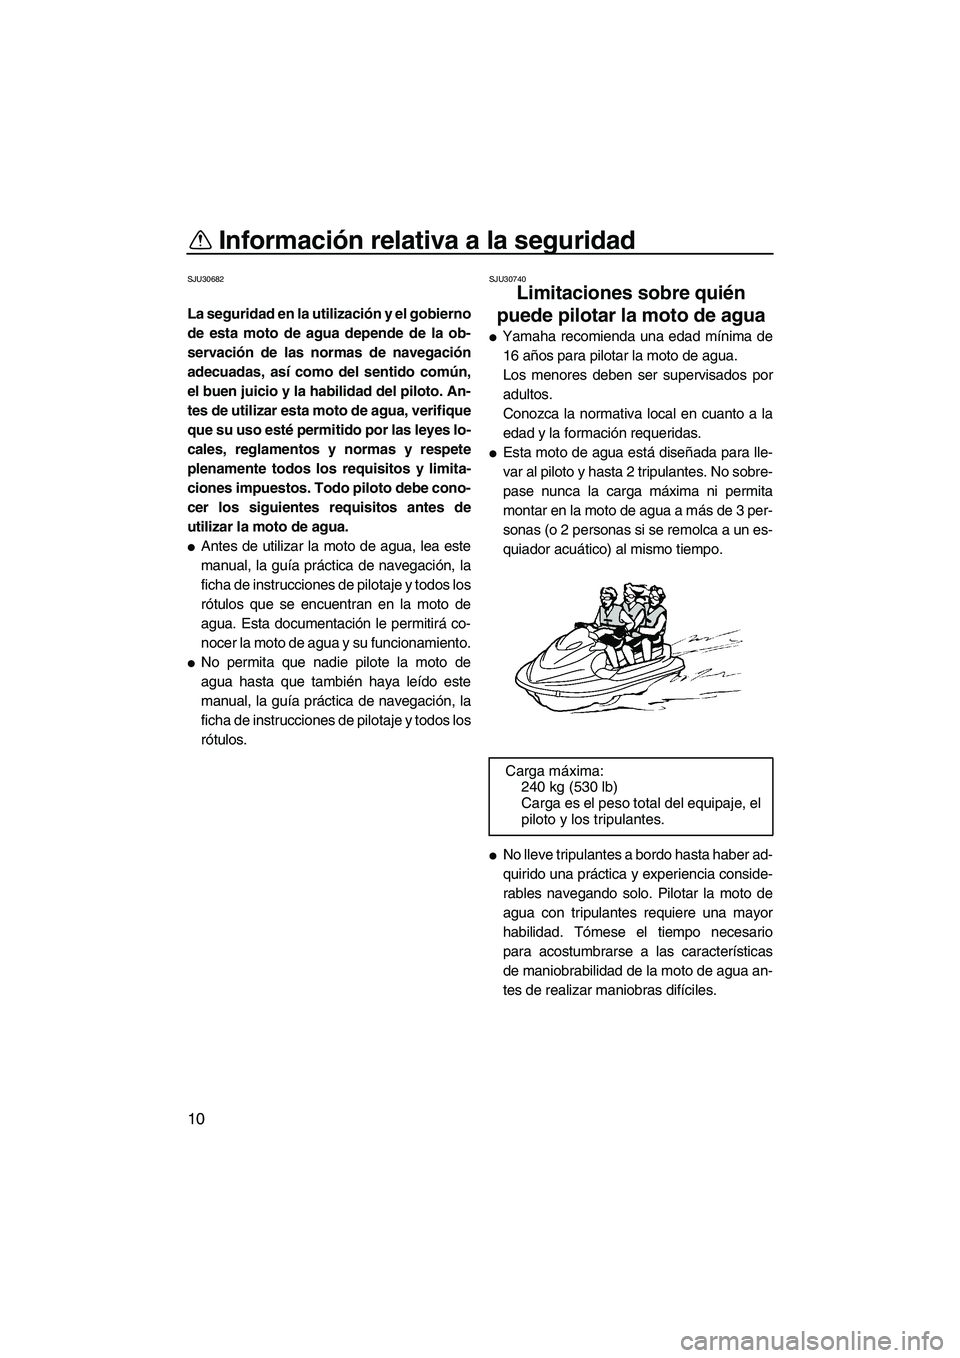 YAMAHA VX SPORT 2010  Manuale de Empleo (in Spanish) Información relativa a la seguridad
10
SJU30682
La seguridad en la utilización y el gobierno
de esta moto de agua depende de la ob-
servación de las normas de navegación
adecuadas, así como del s